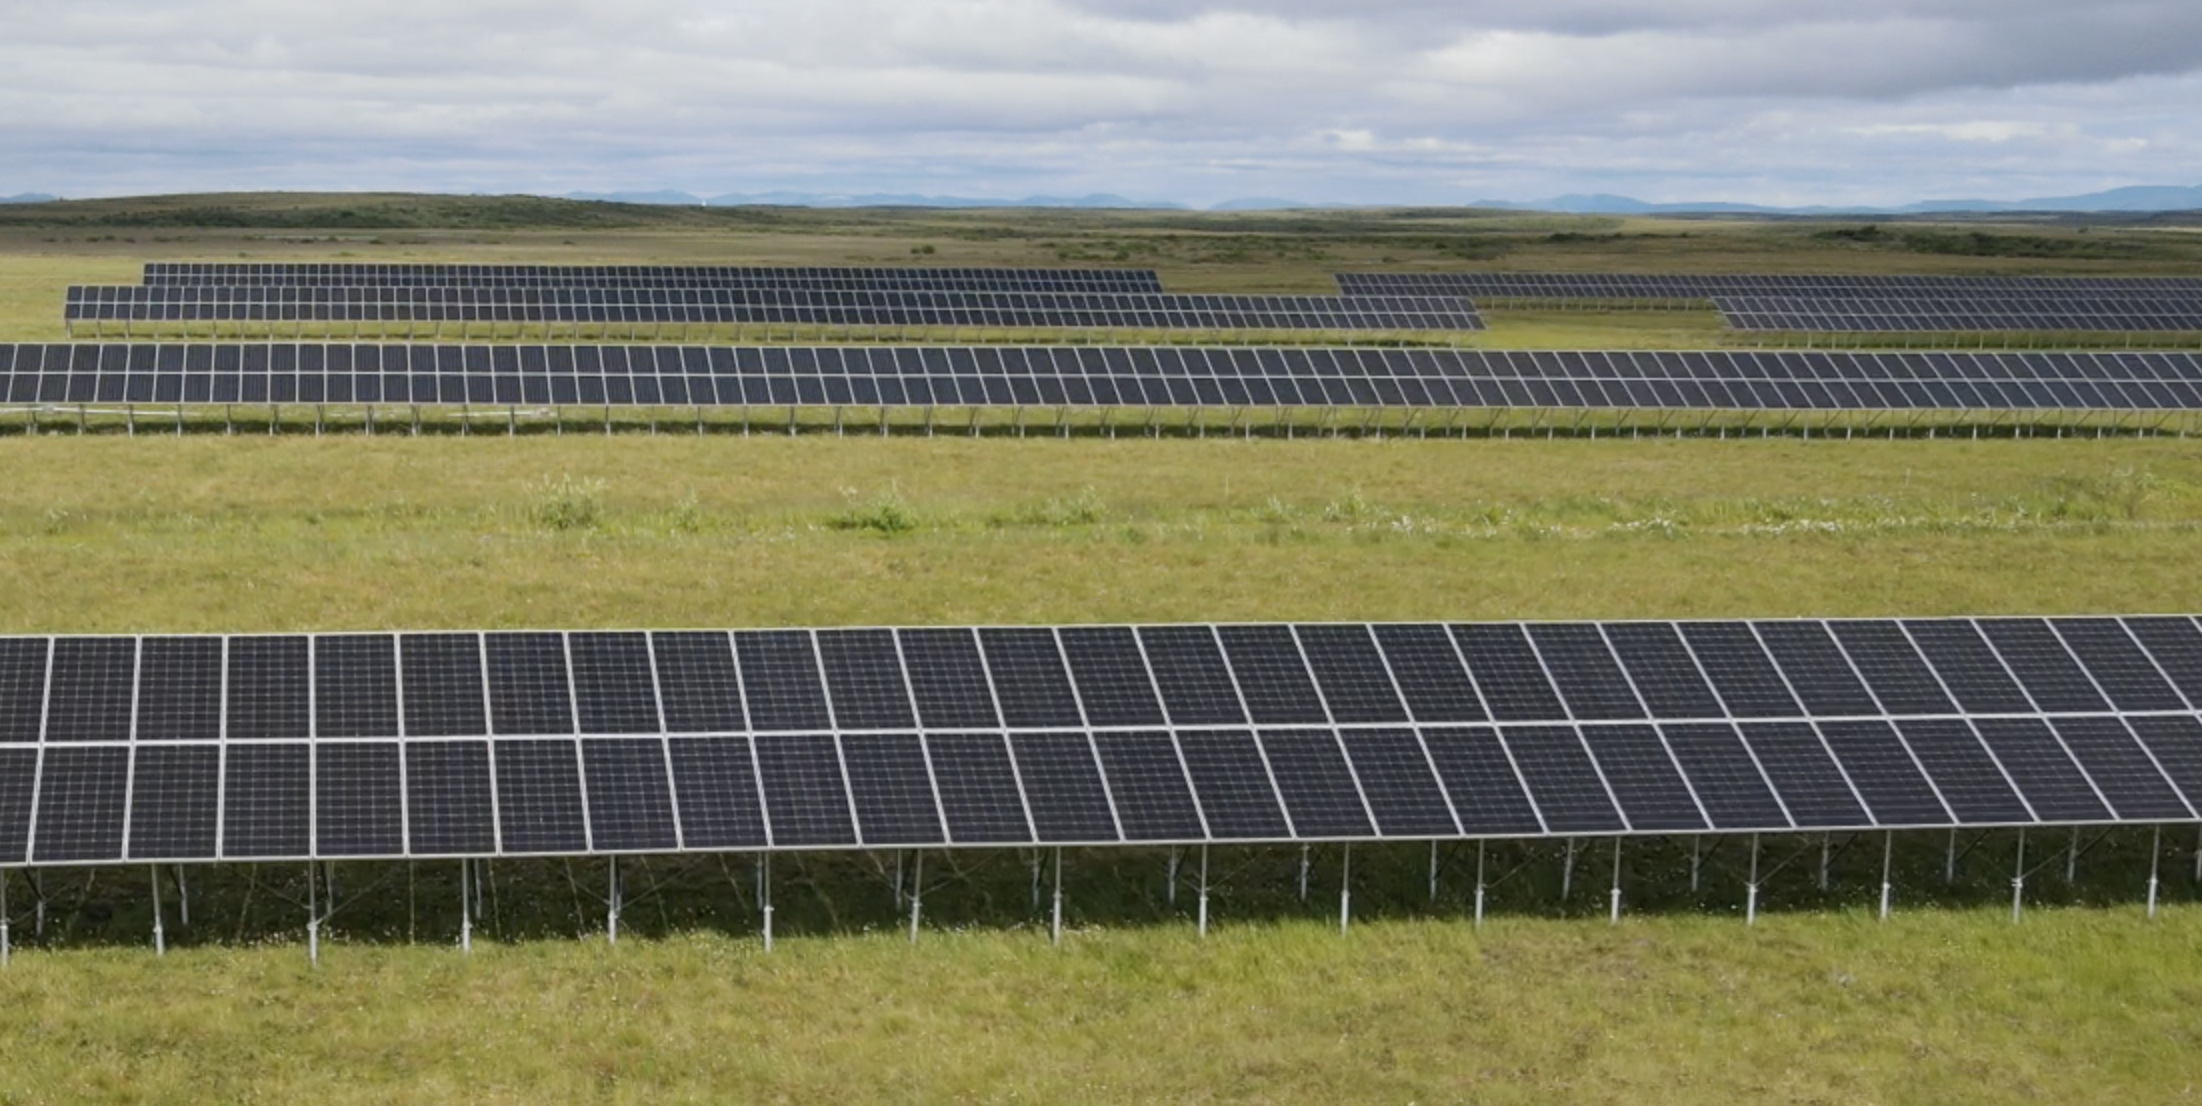 Kotzebue solar panels